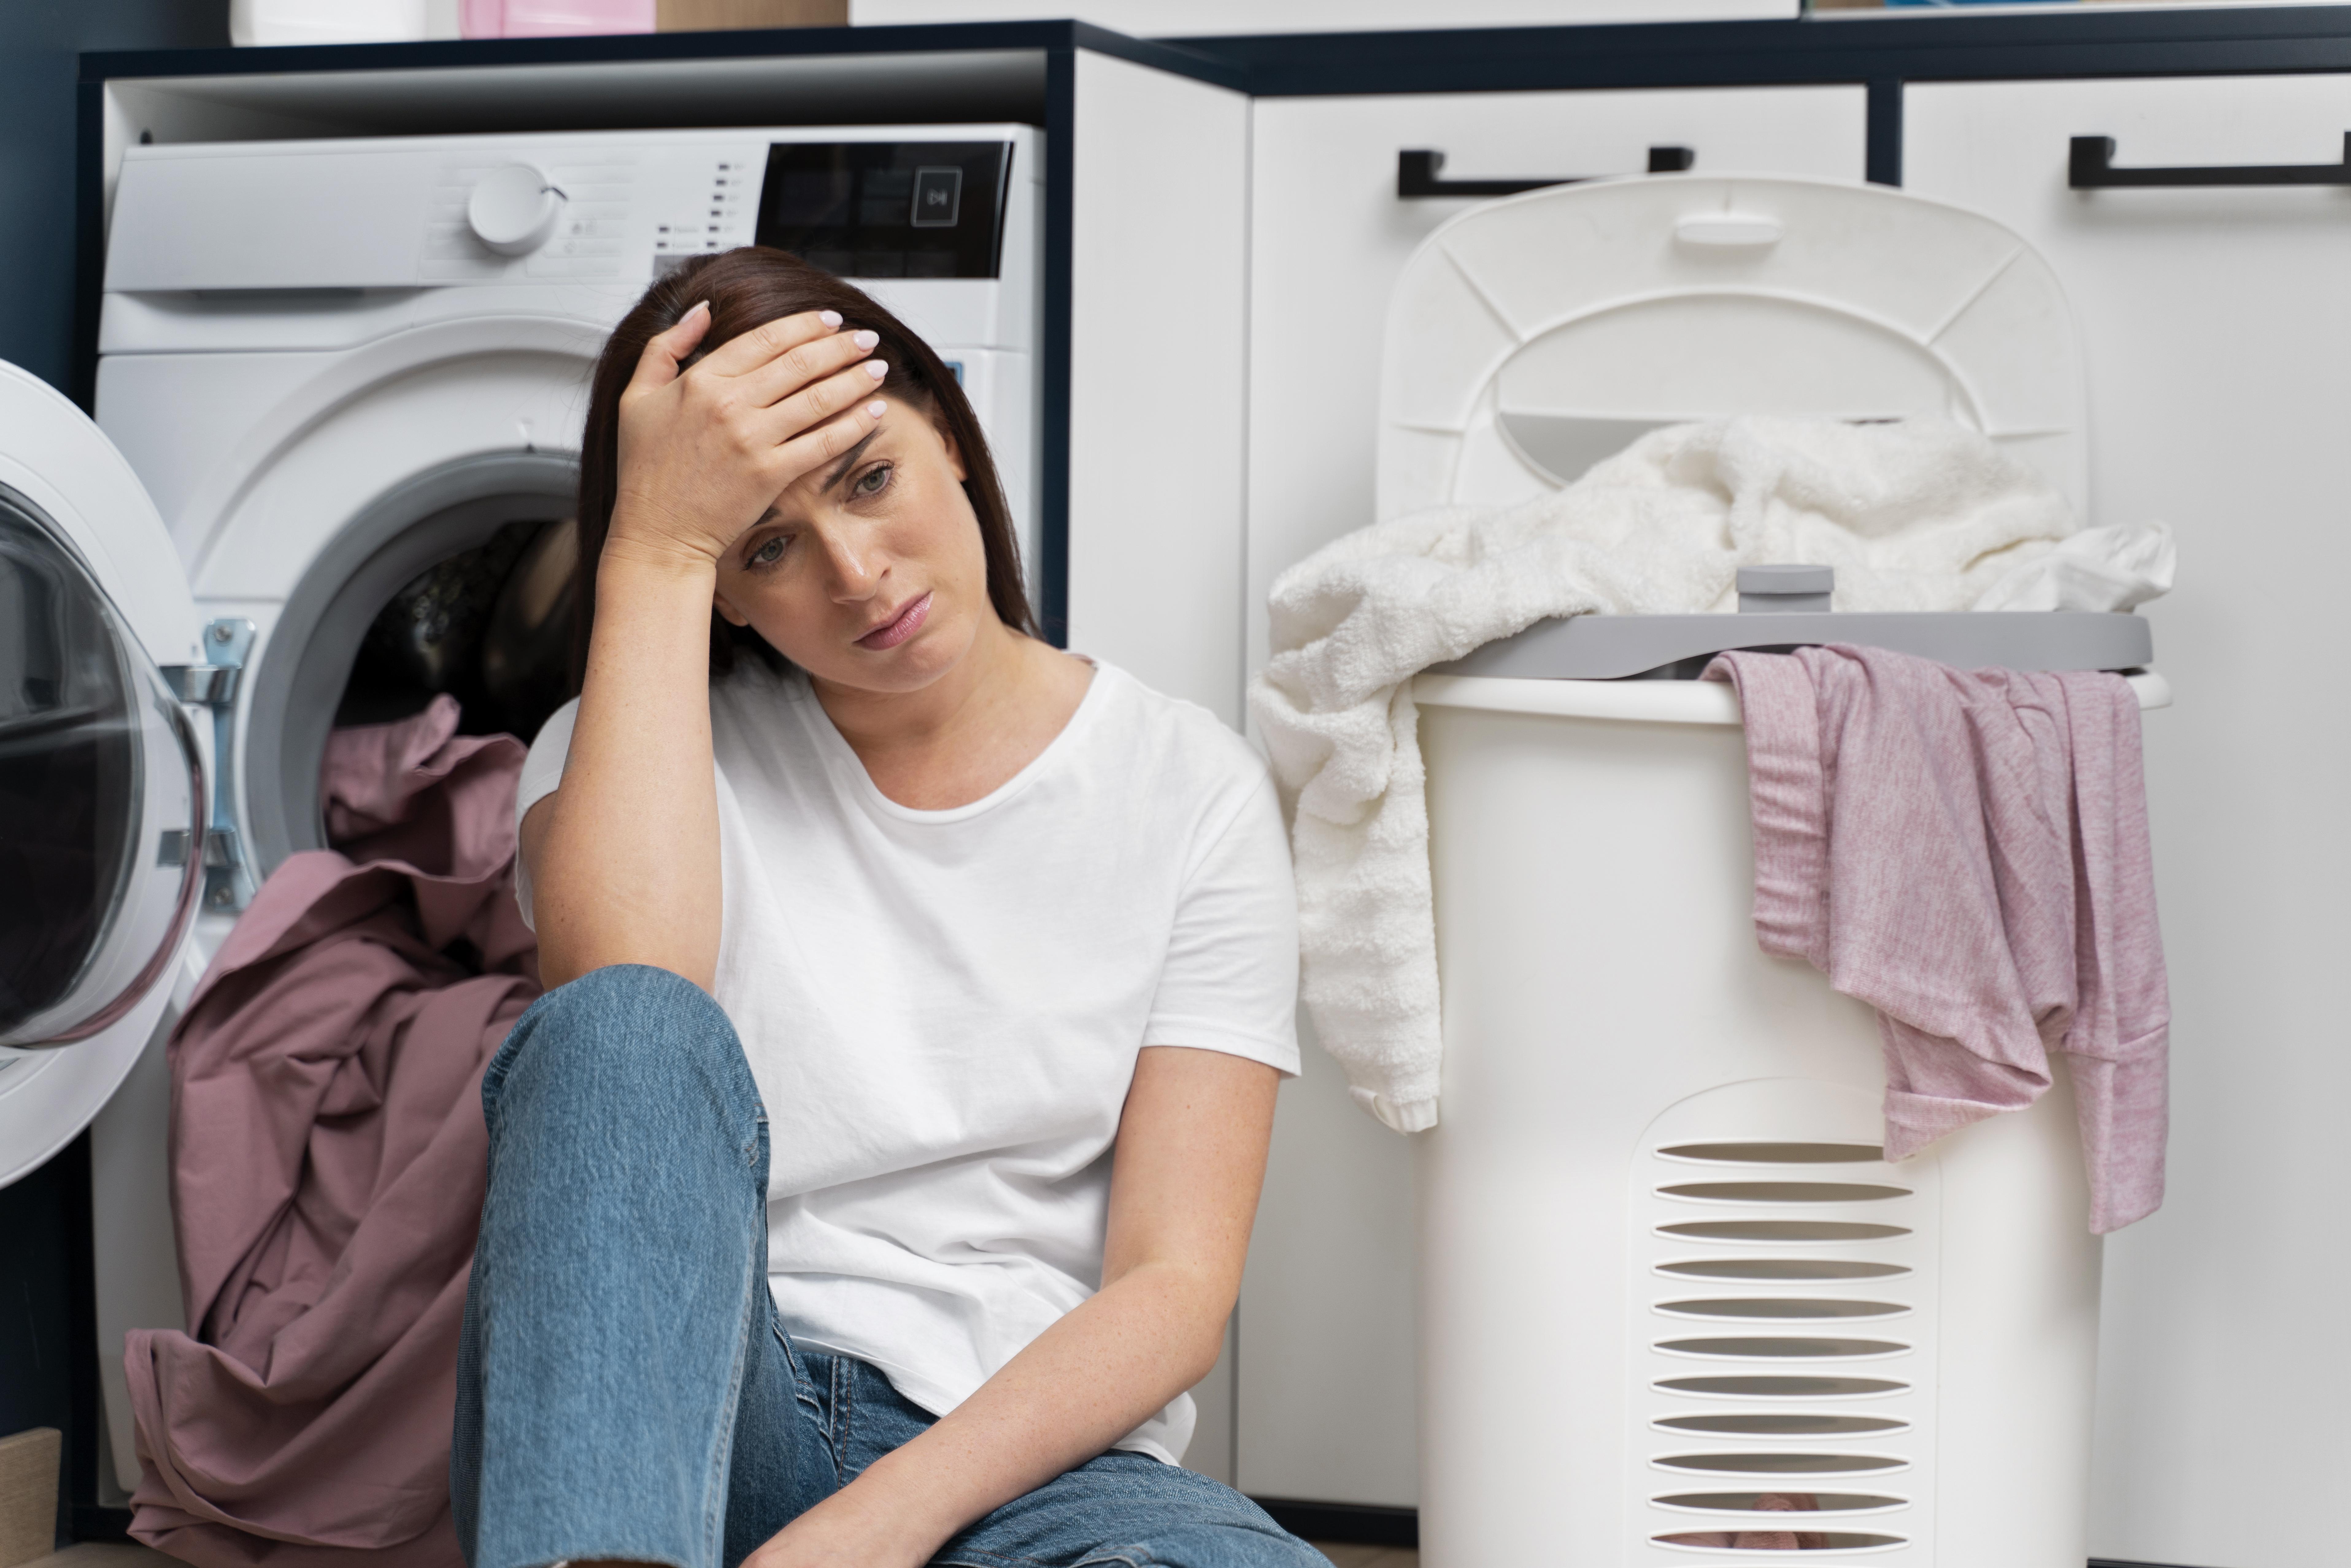 Mujer con cara de disgusto mientras se apoya en una lavadora, rodeada de ropa sucia | Fuente: Freepik